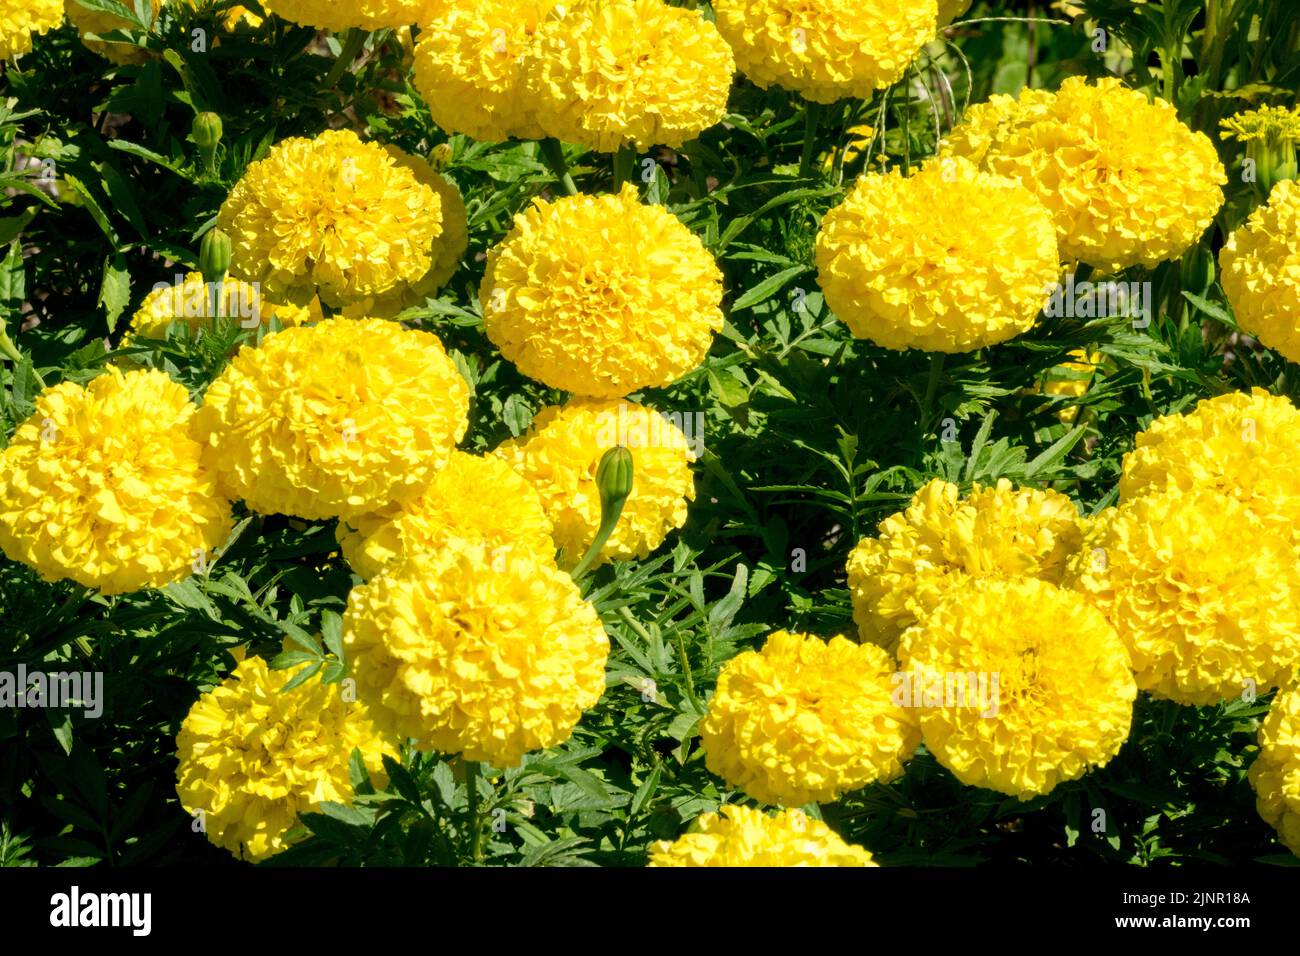 Gelbe Ringelblumen gelbe Tagetes 'Lady First' Bedding Plant Tagetes erecta afrikanische Ringelblume blühende Blumenbeete Blumen blühender August blühend Stockfoto